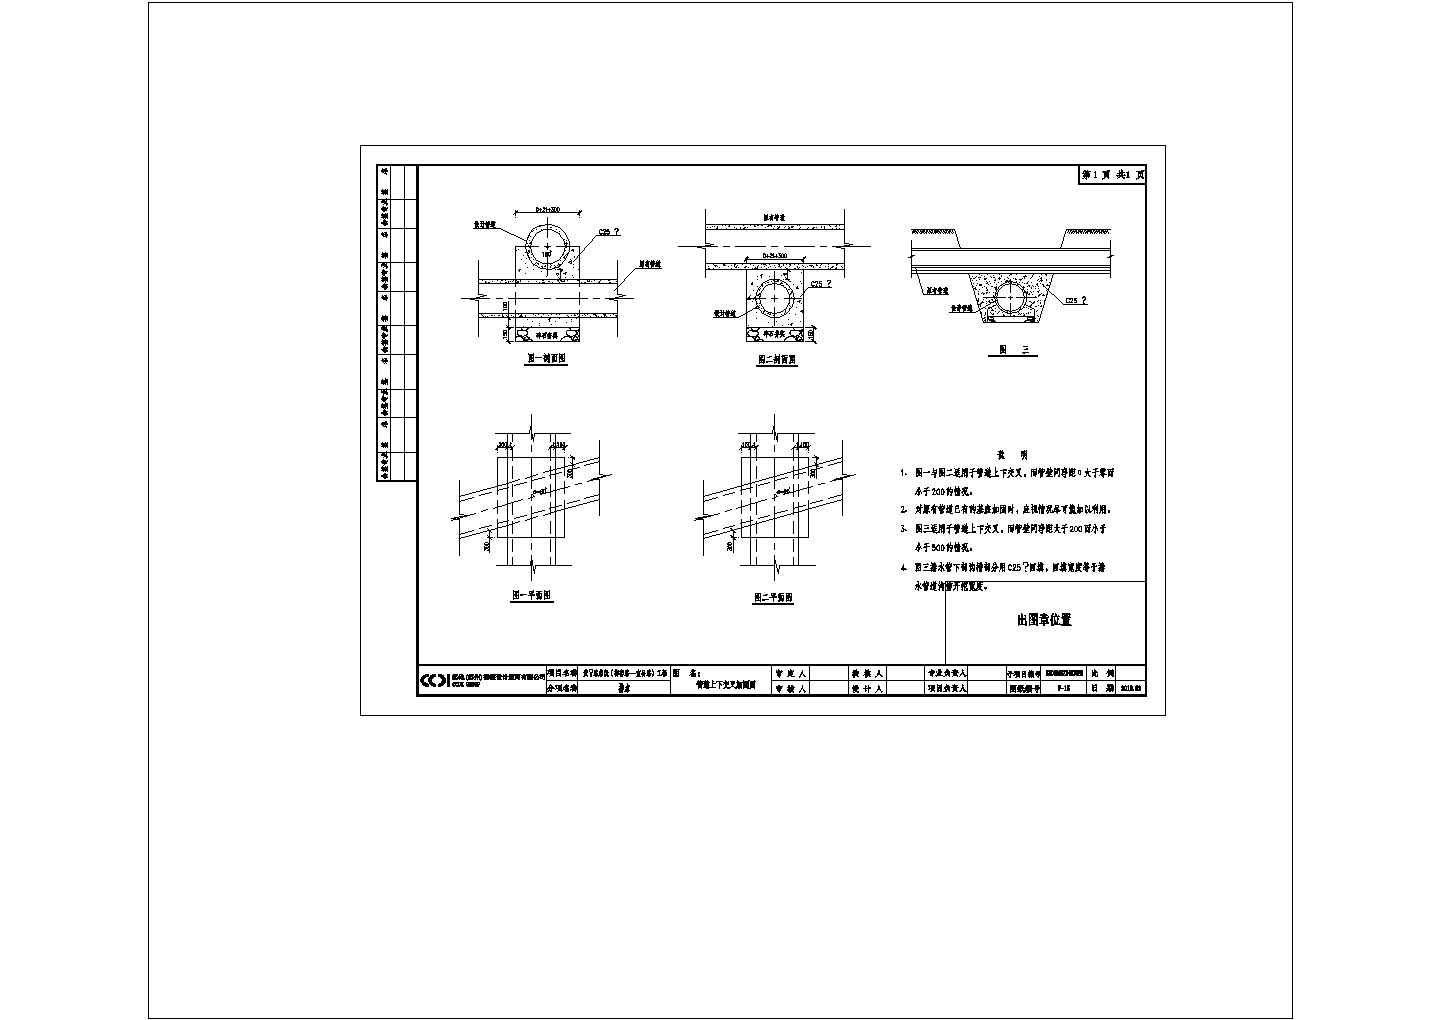 黄蠡路四期工程-施工图设计-排水-P 15 管道上下交叉加固图CAD